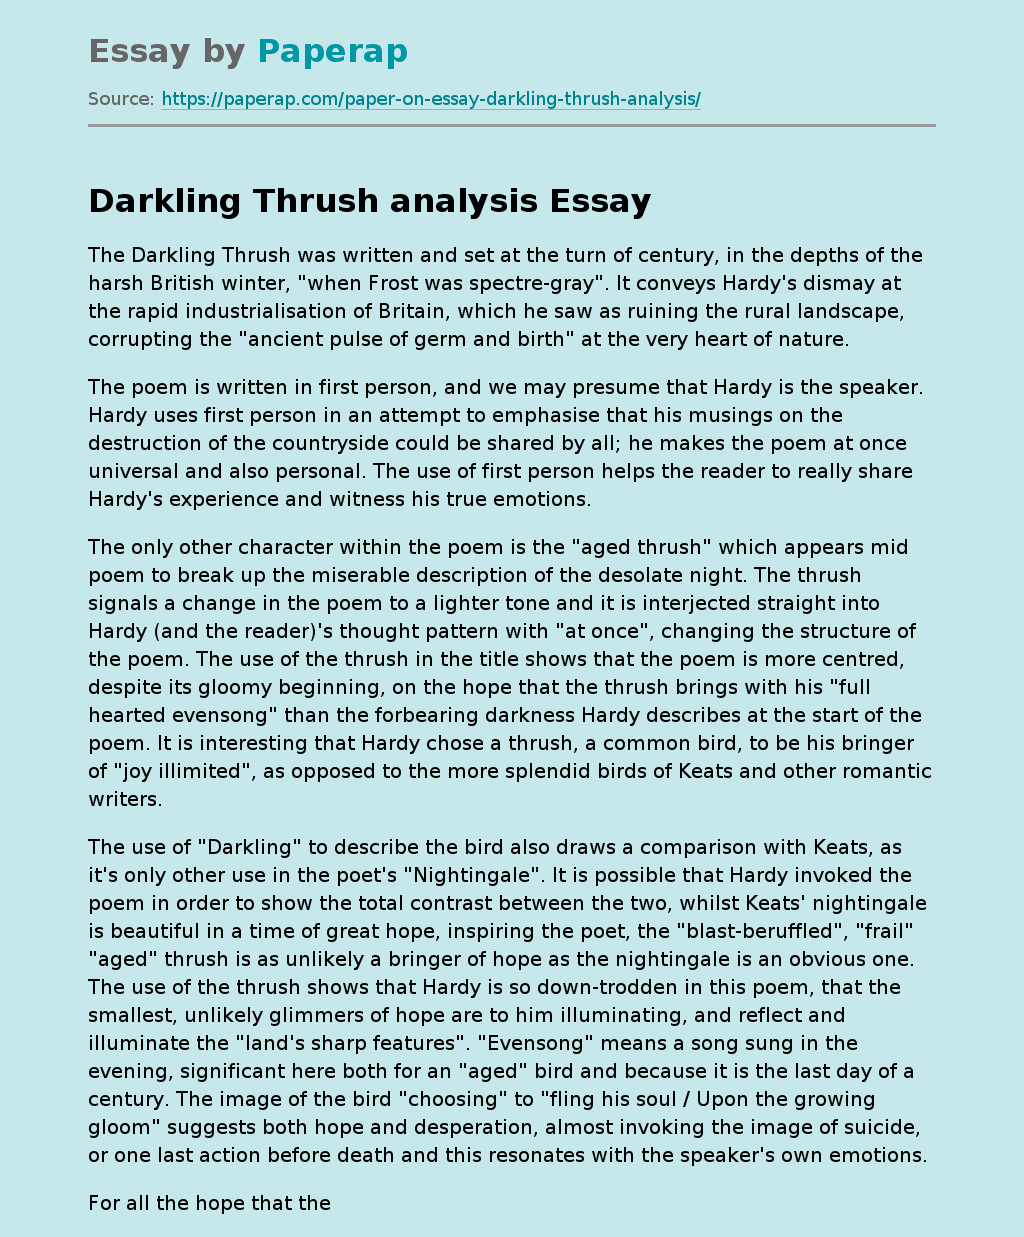 Darkling Thrush Analysis